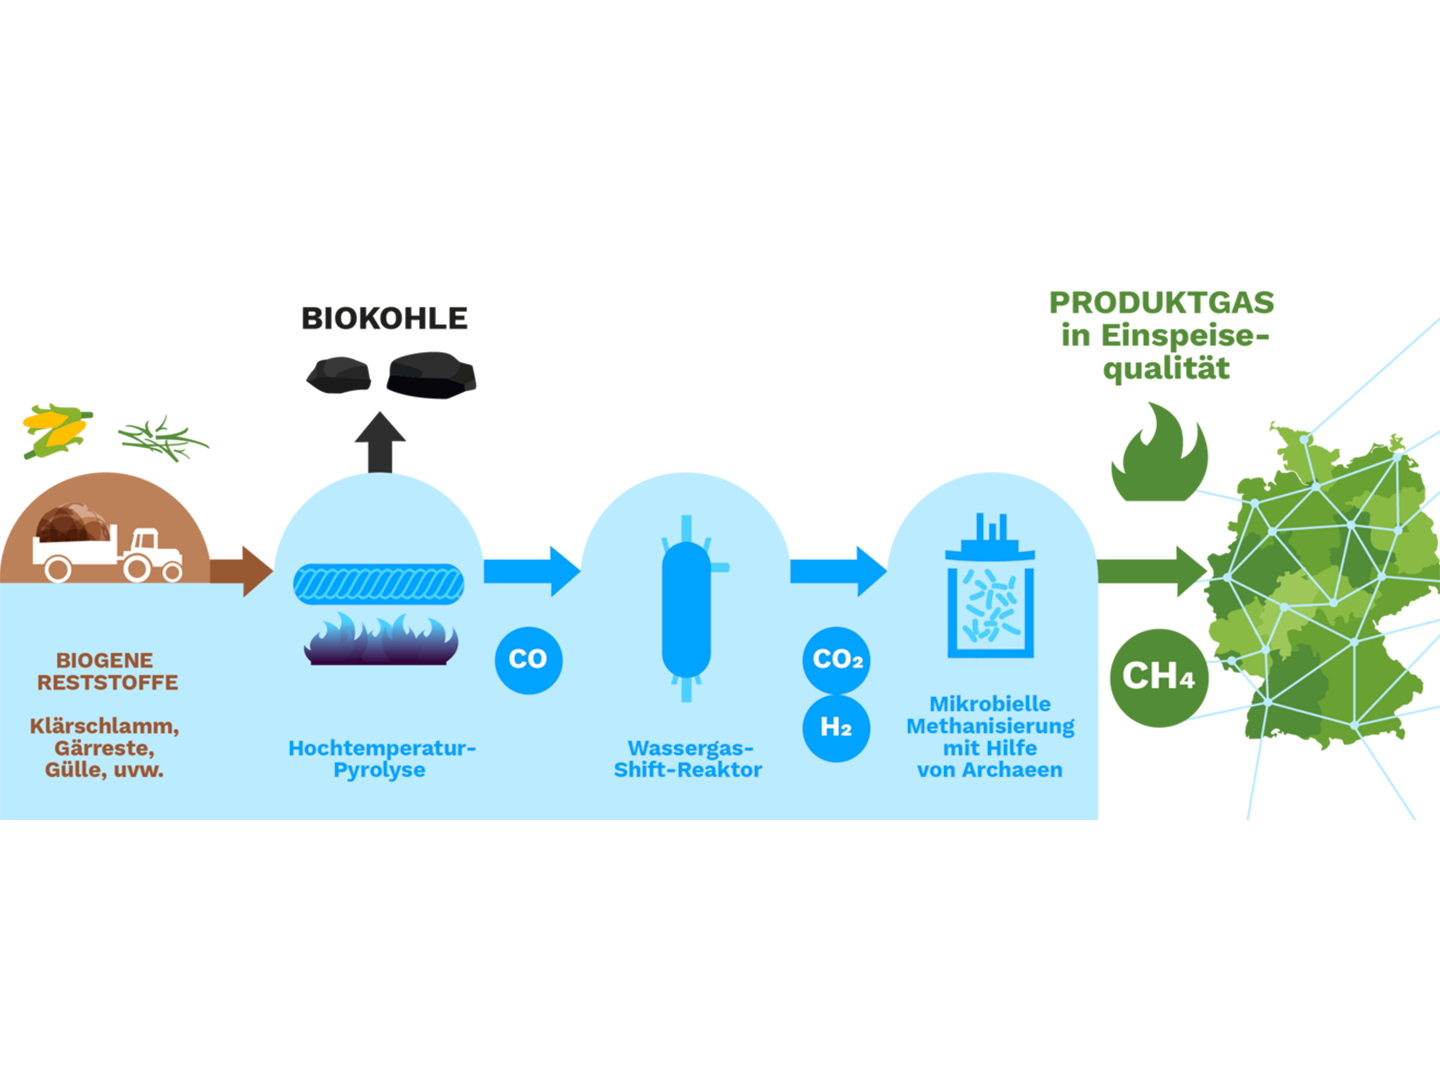 Produktion von Biomethan aus biogenen Reststoffen 